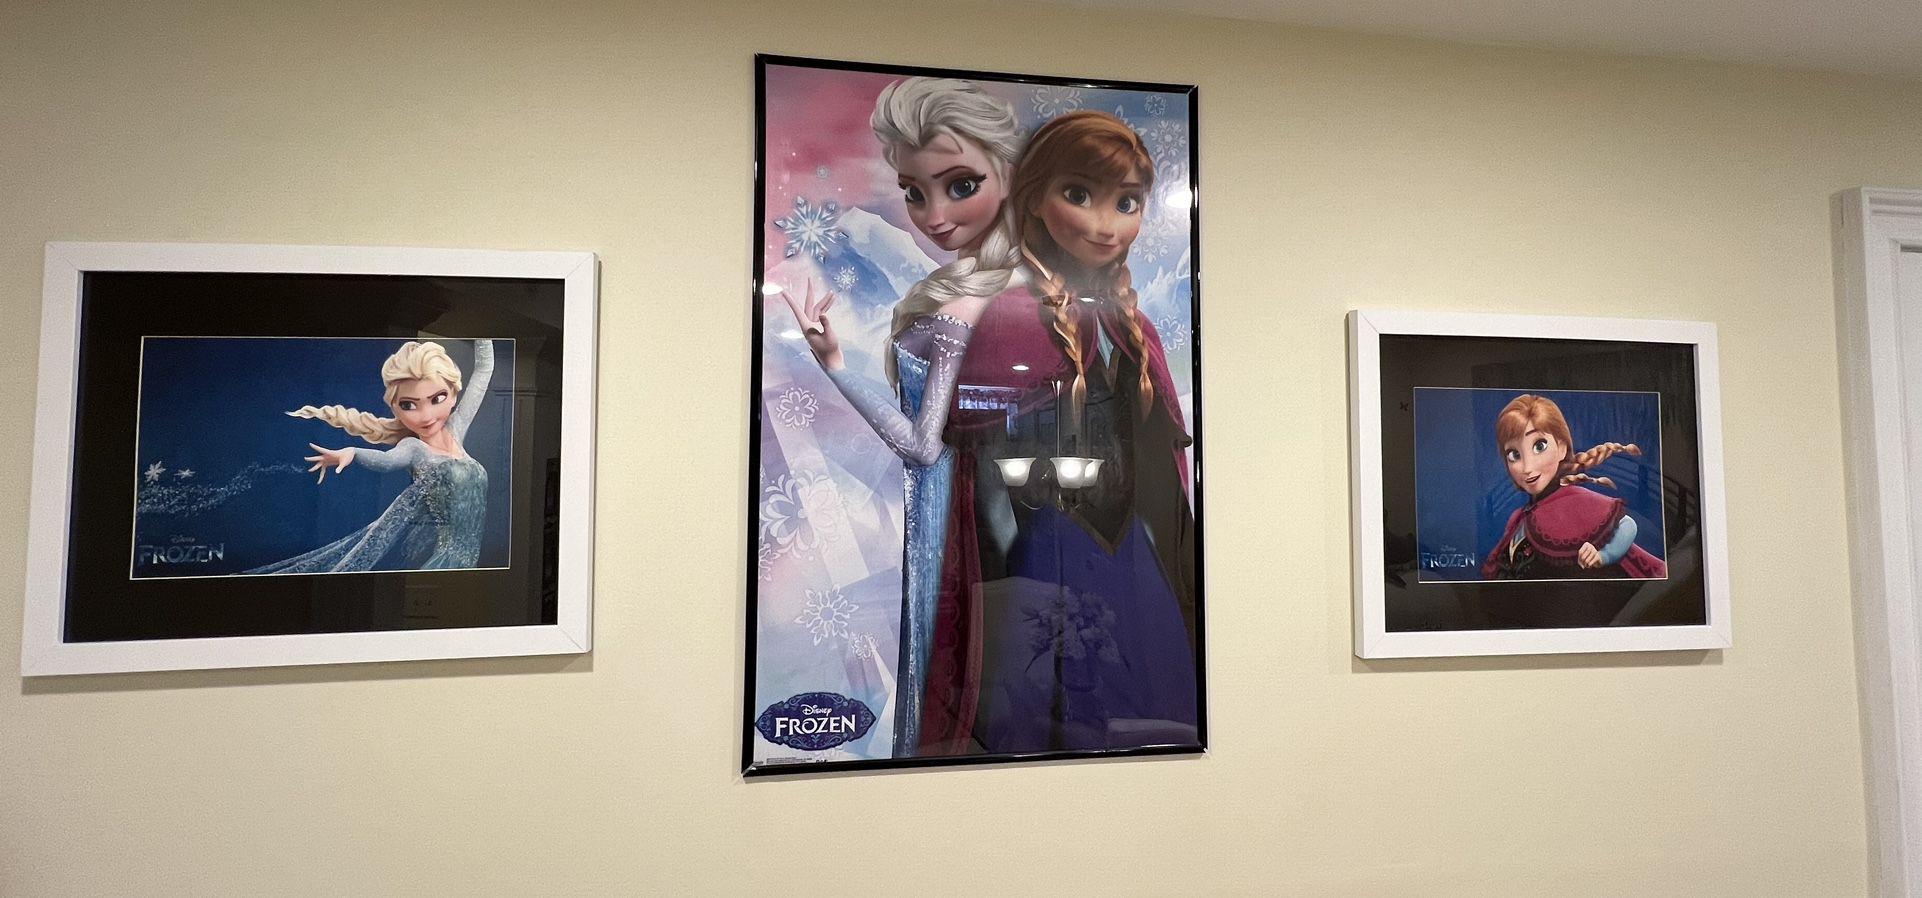 Princess Elsa & Anna Framed Pictures 3 Disney Prints